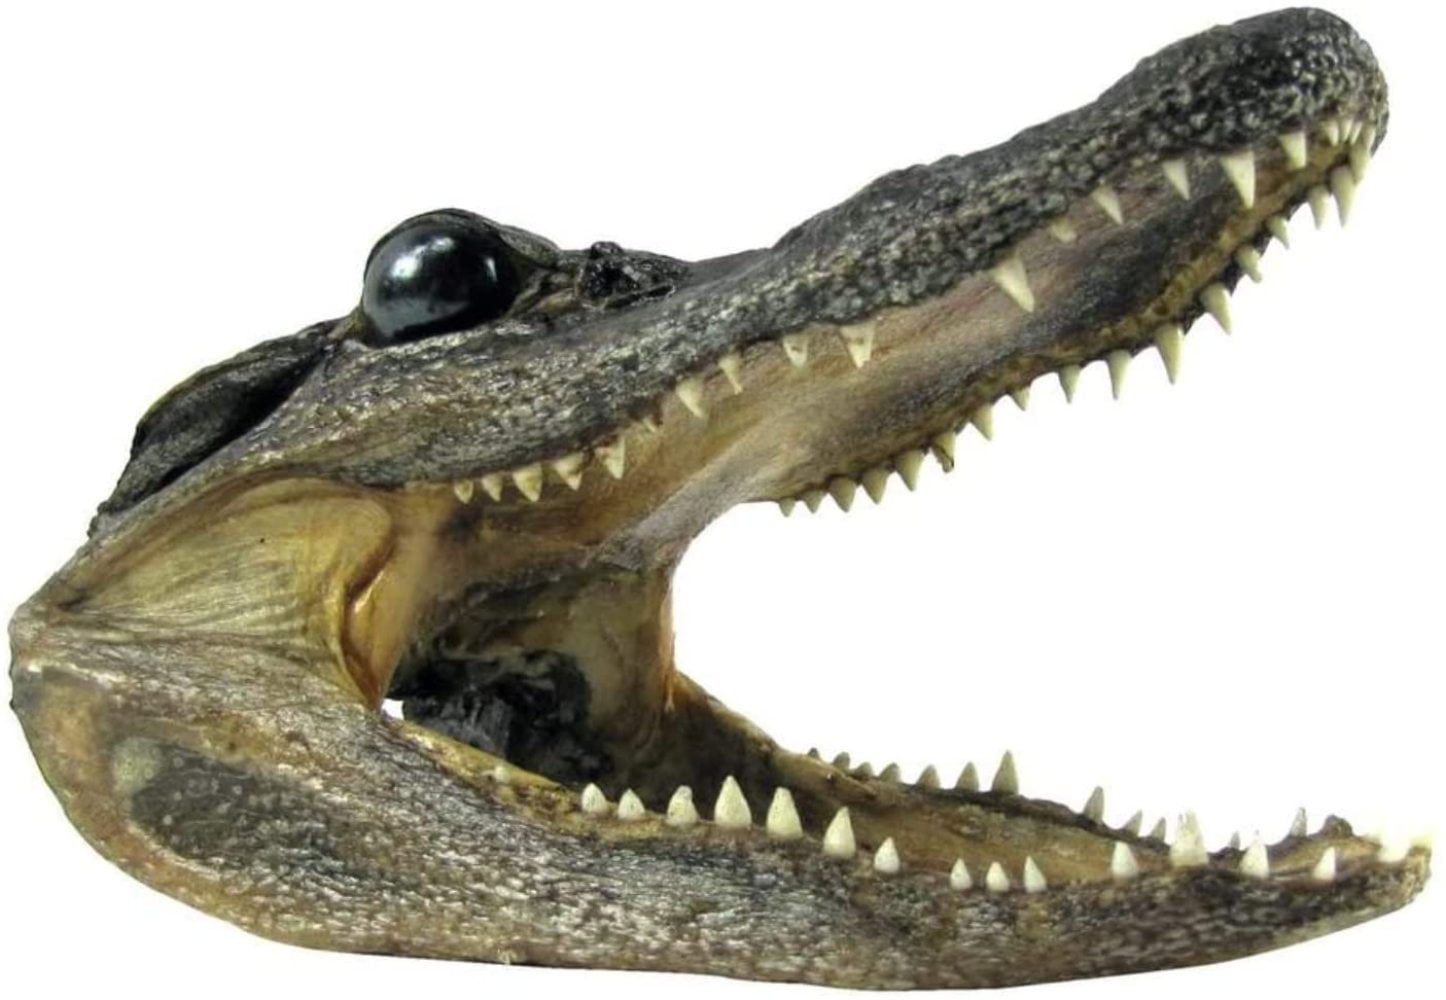 Authentic 5-6" Alligator Head Real Alligator Taxidermy & Gator Key Chain BIG PIC 